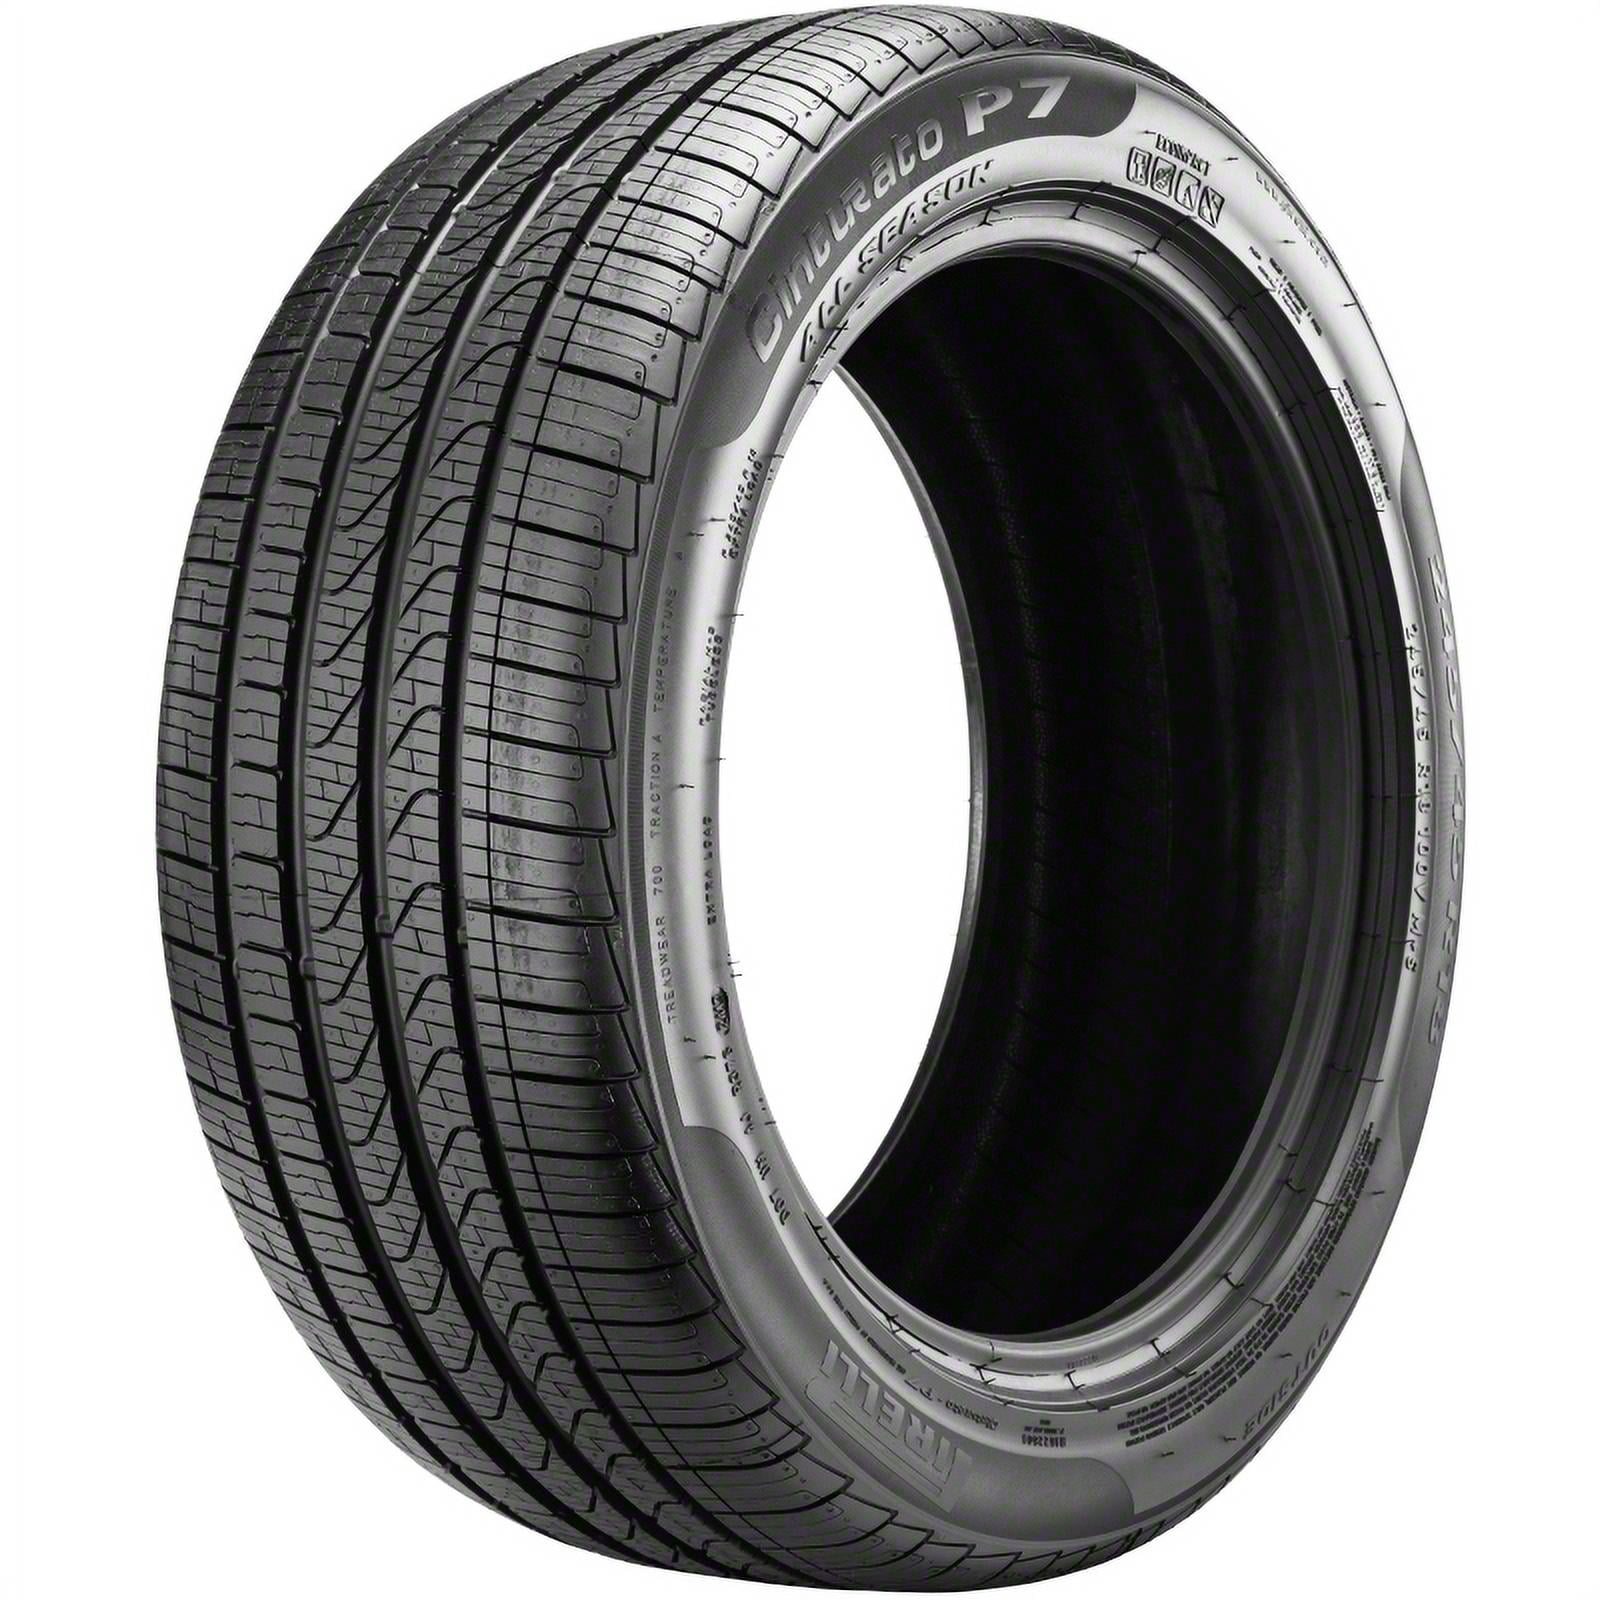 Pirelli Cinturato P7 All-Season 225/40R18 92H Tire